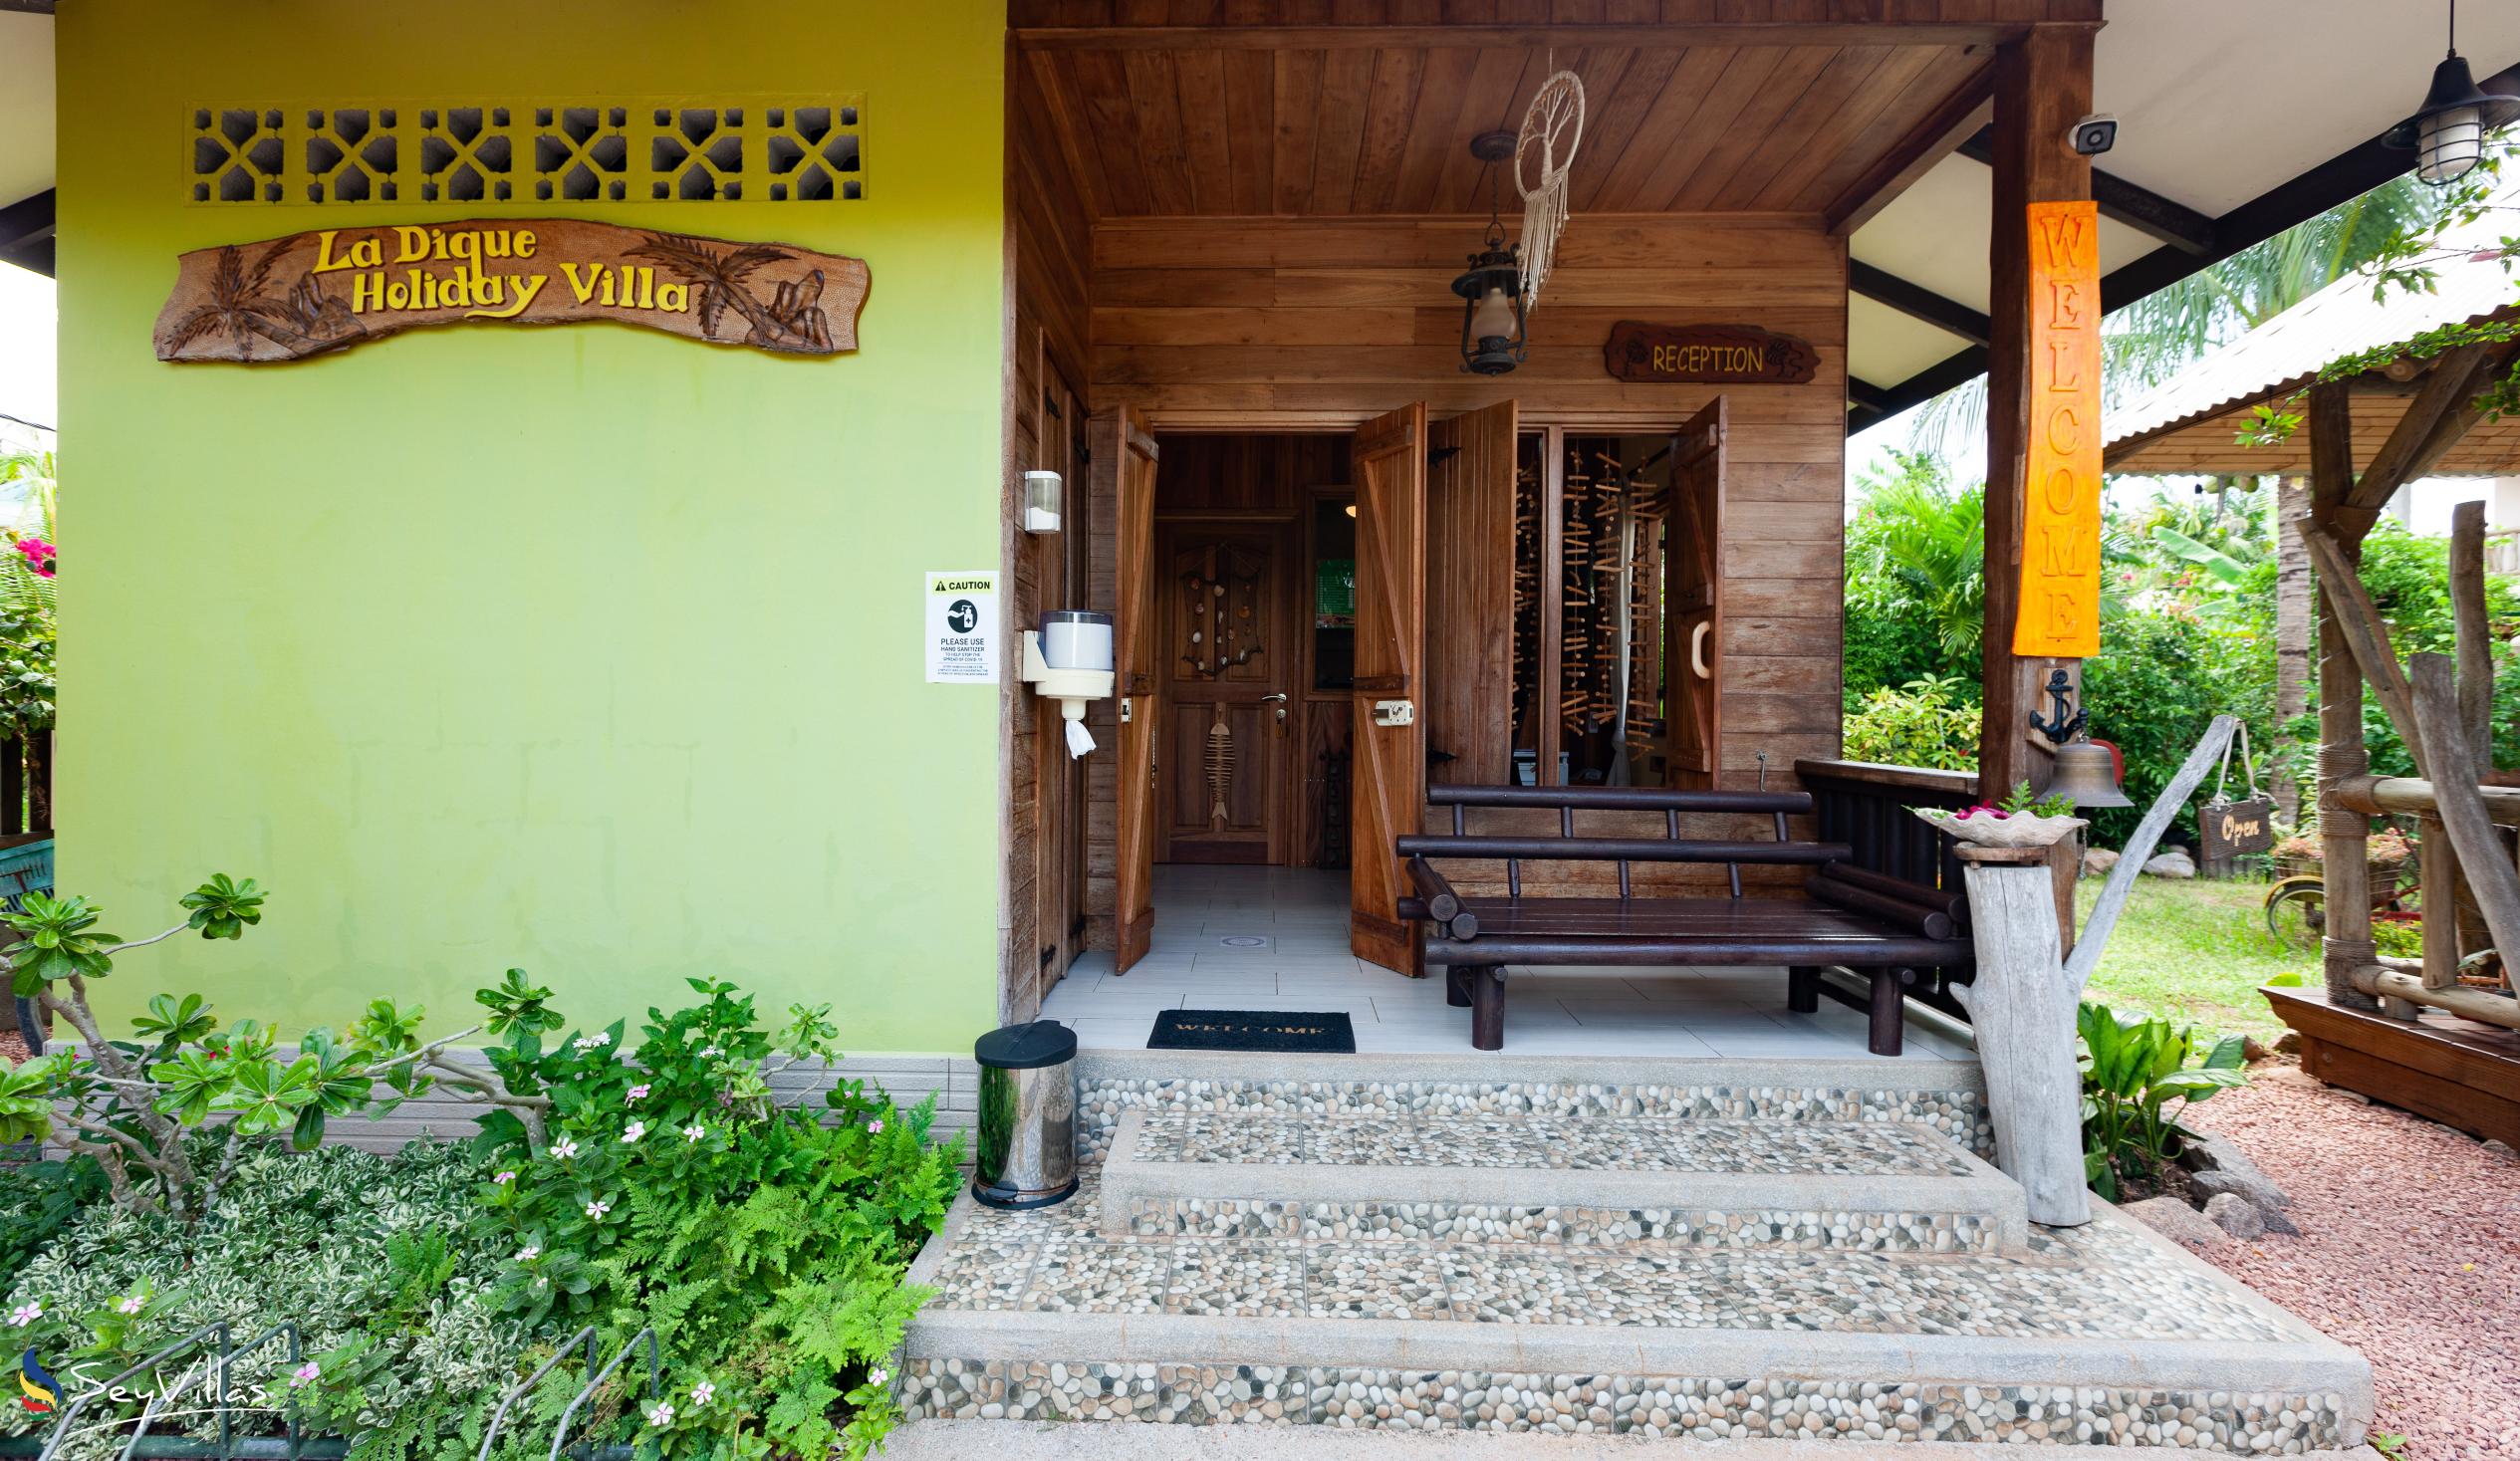 Photo 34: La Digue Holiday Villa - Indoor area - La Digue (Seychelles)